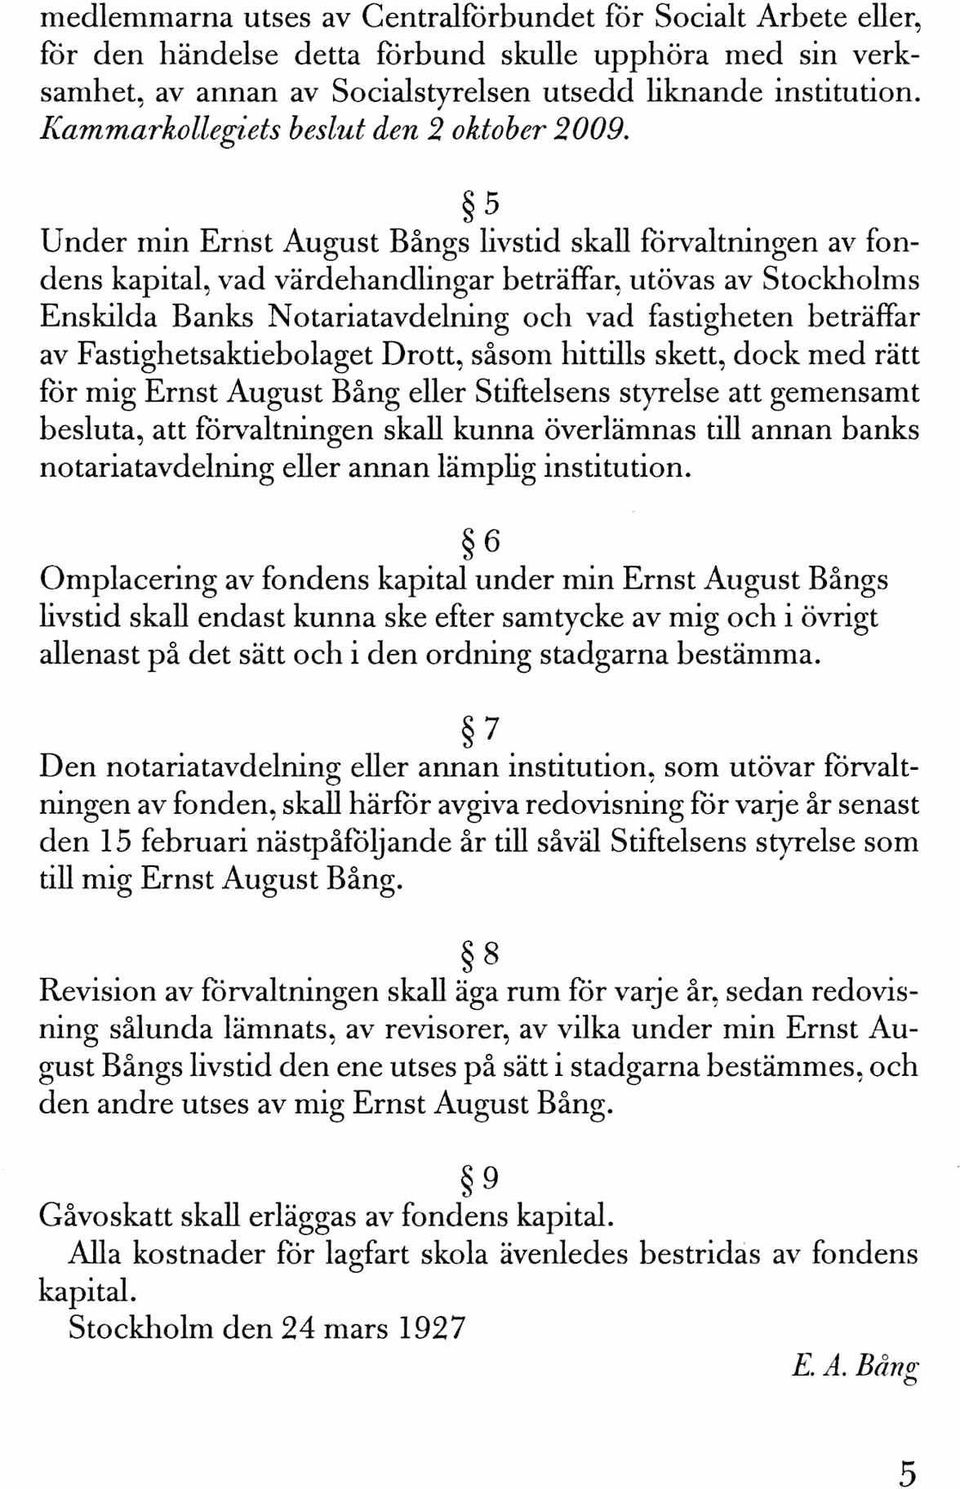 5 Under min Ernst August Bångs livstid skall forvaltningen av fondens kapital, vad värdehandlingar beträffar, utövas av Stockholms Enskilda Banks Notariatavdelning och vad fastigheten beträffar av